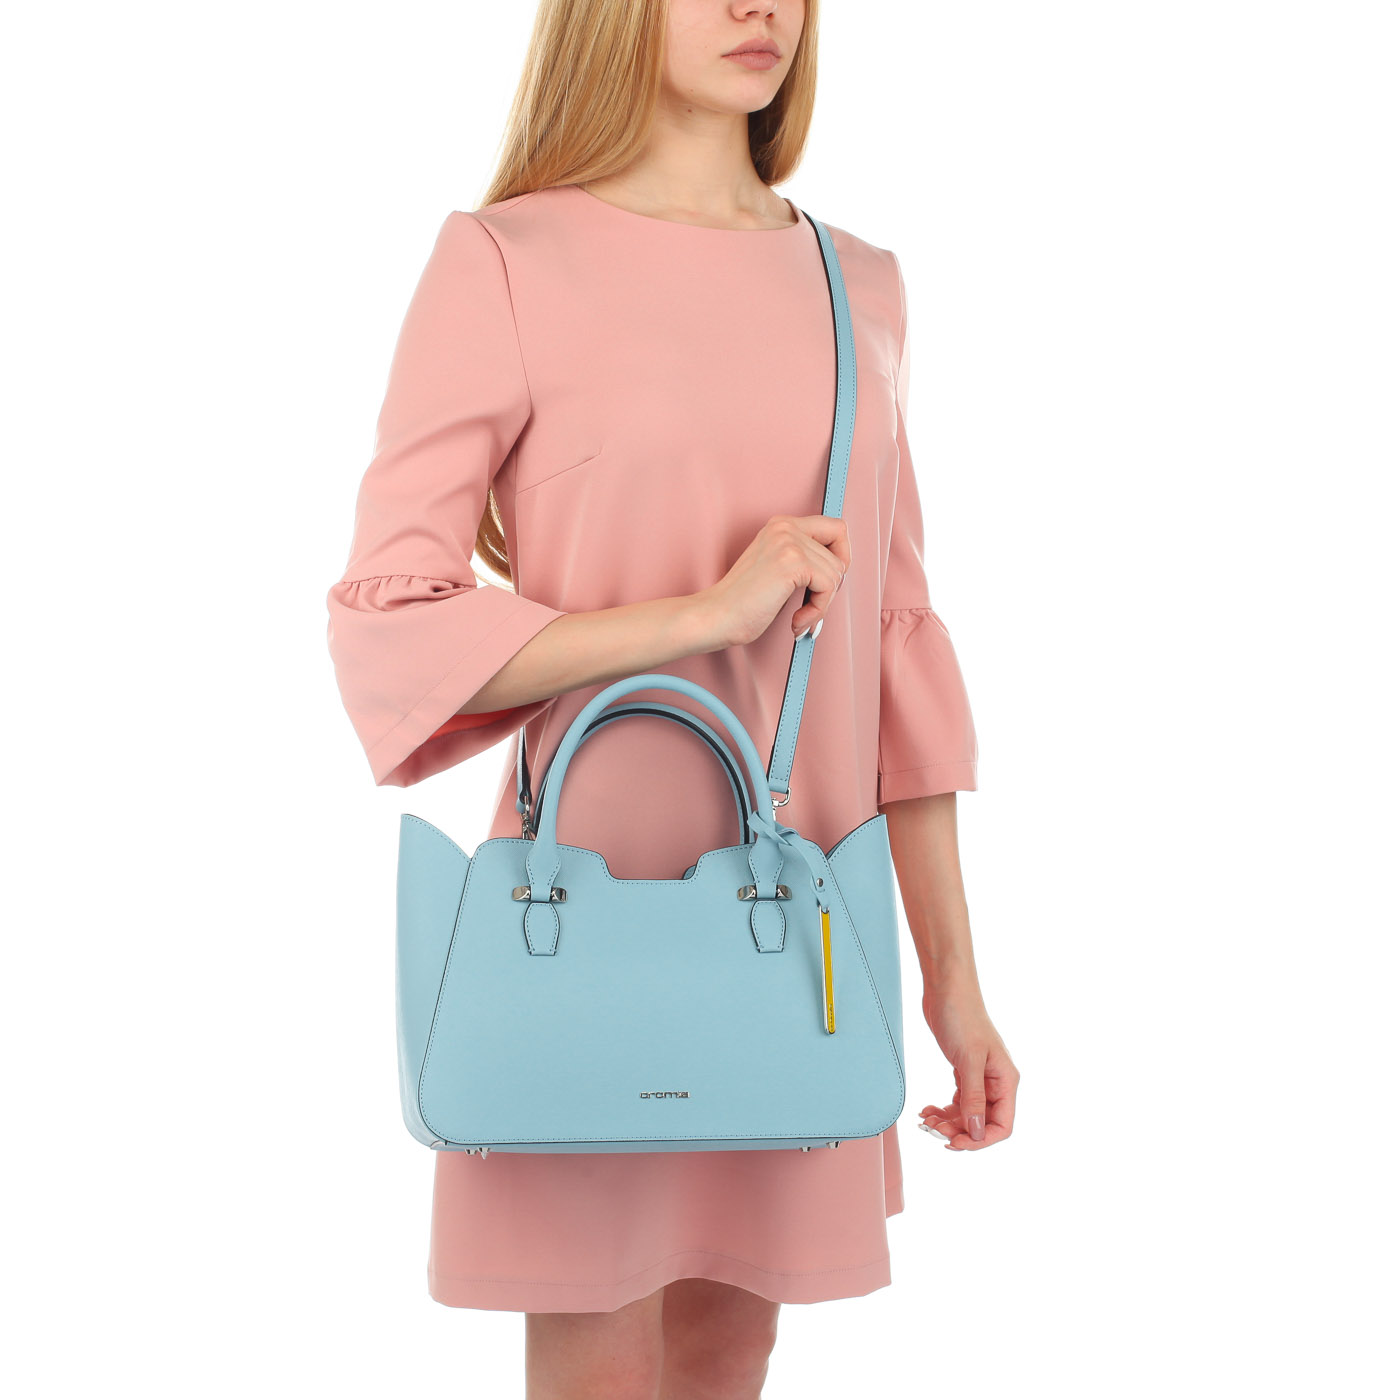 Женская сумка из голубого сафьяна Cromia Perla